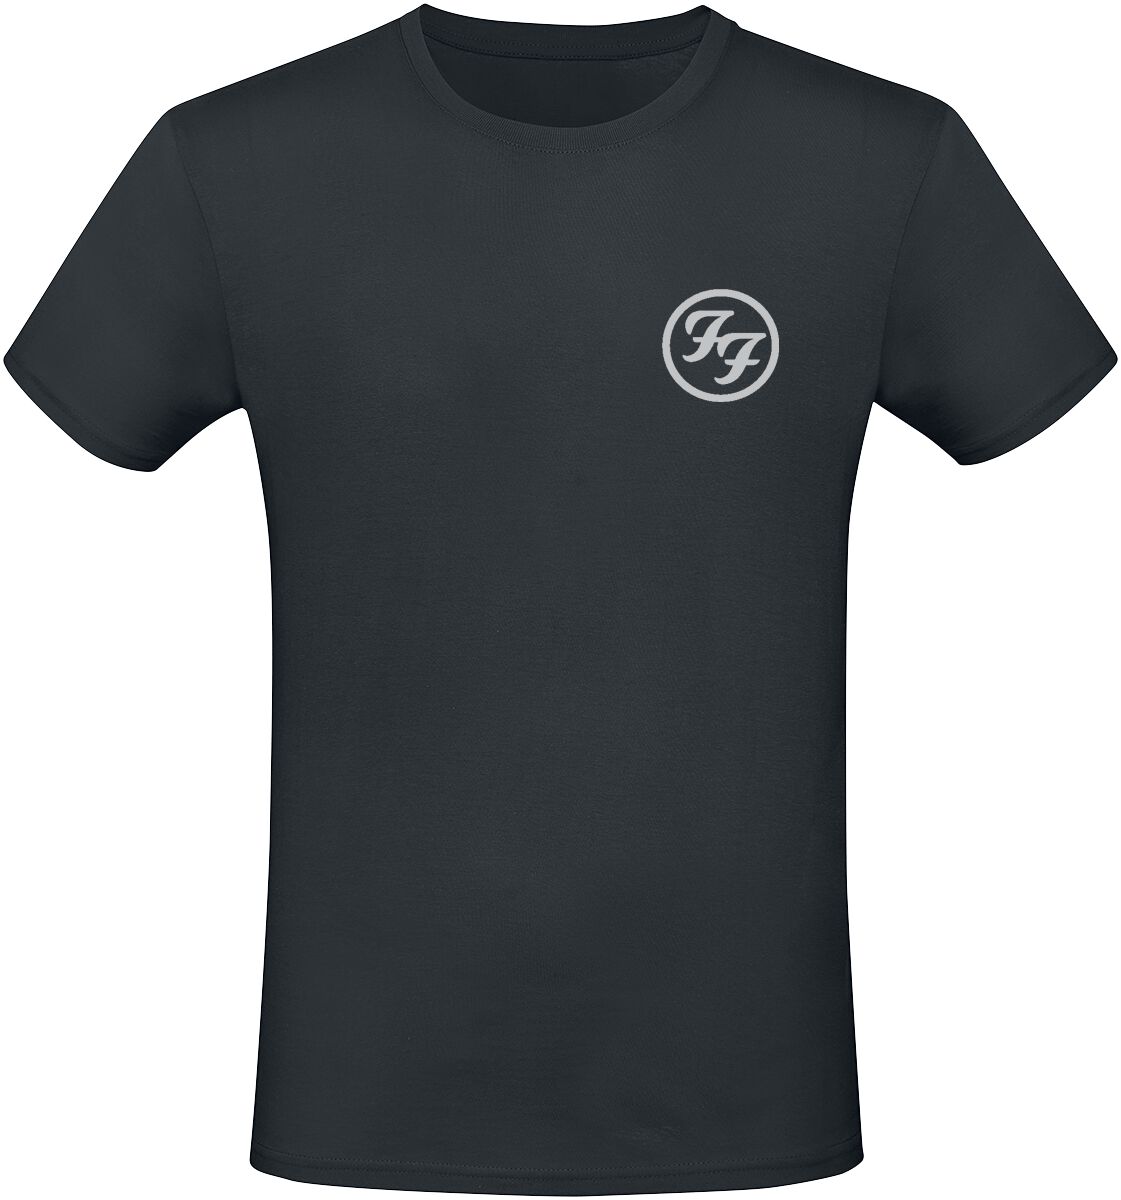 Foo Fighters T-Shirt - Colour And The Shape - S bis L - für Männer - Größe M - schwarz  - Lizenziertes Merchandise!